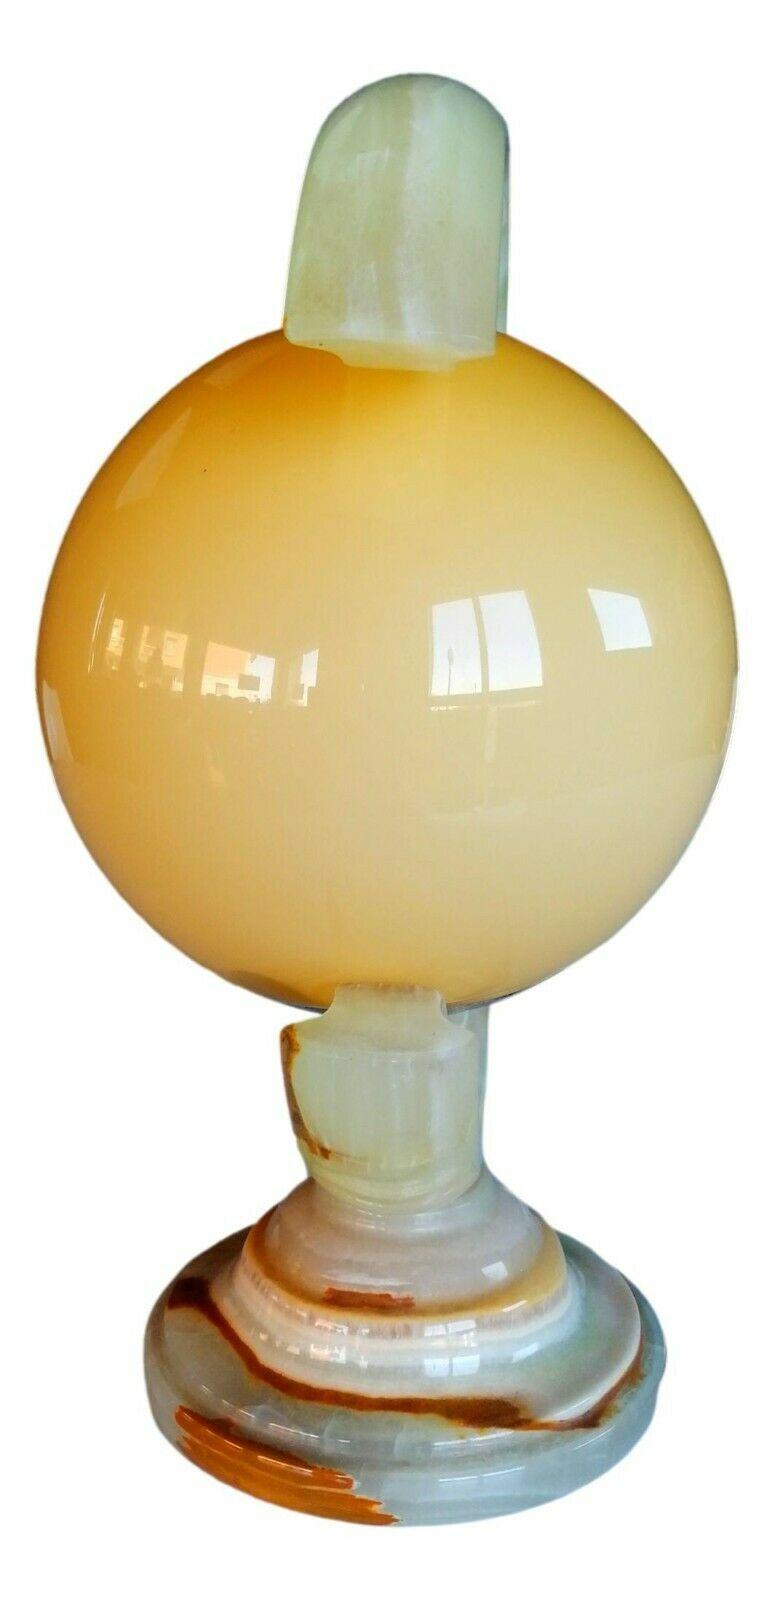 Rare lampe de table de l'ère spatiale, début des années 70, en onyx avec un diffuseur en verre opalin beige sable

Il mesure 36 cm de hauteur sur 28 cm de largeur, en excellentes conditions de stockage, entièrement fonctionnel

pour des raisons